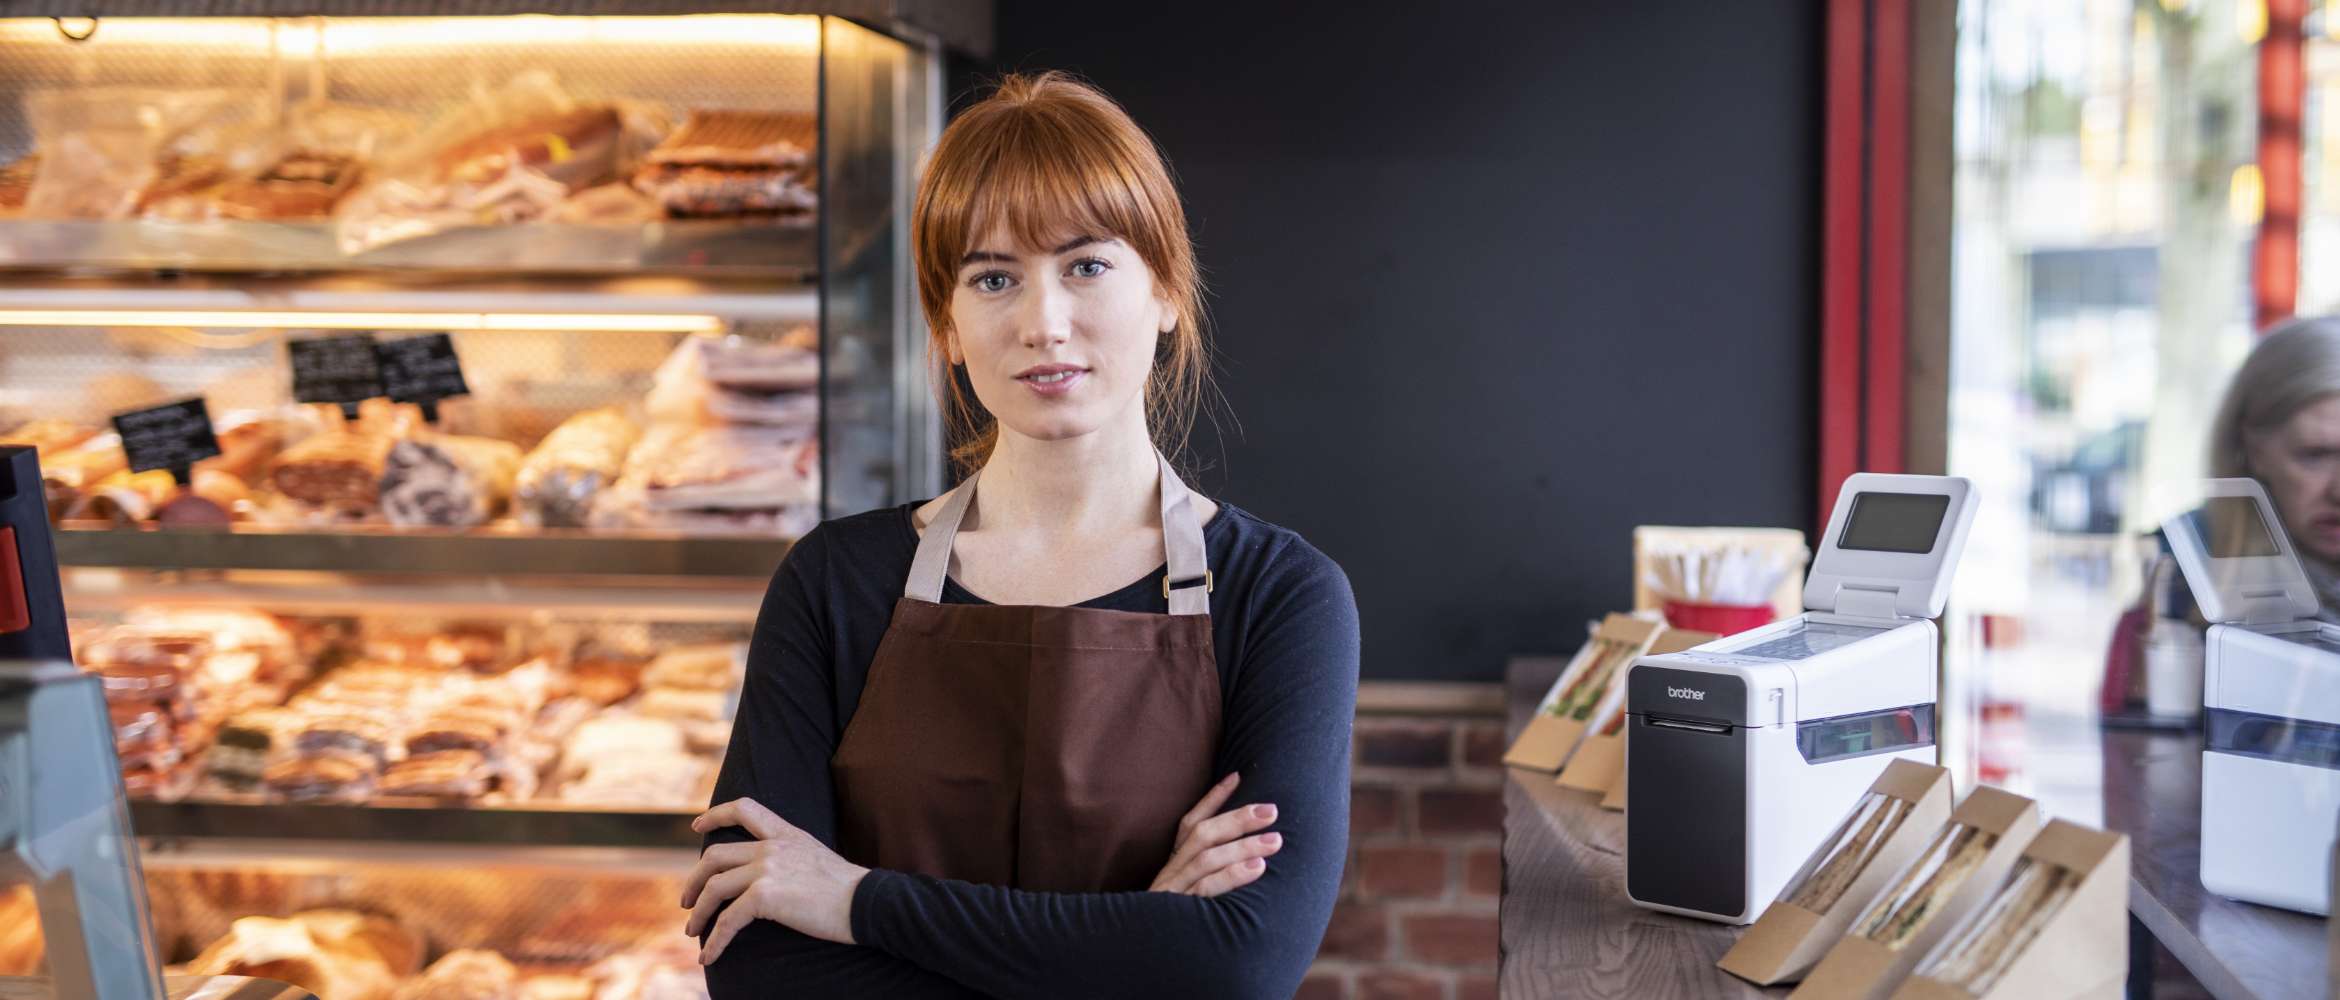 En kvinnelig ansatt ved en bakeributikk står med armene foldet og ser mot kameraet. En Brother etikettskriver er i bakgrunnen.